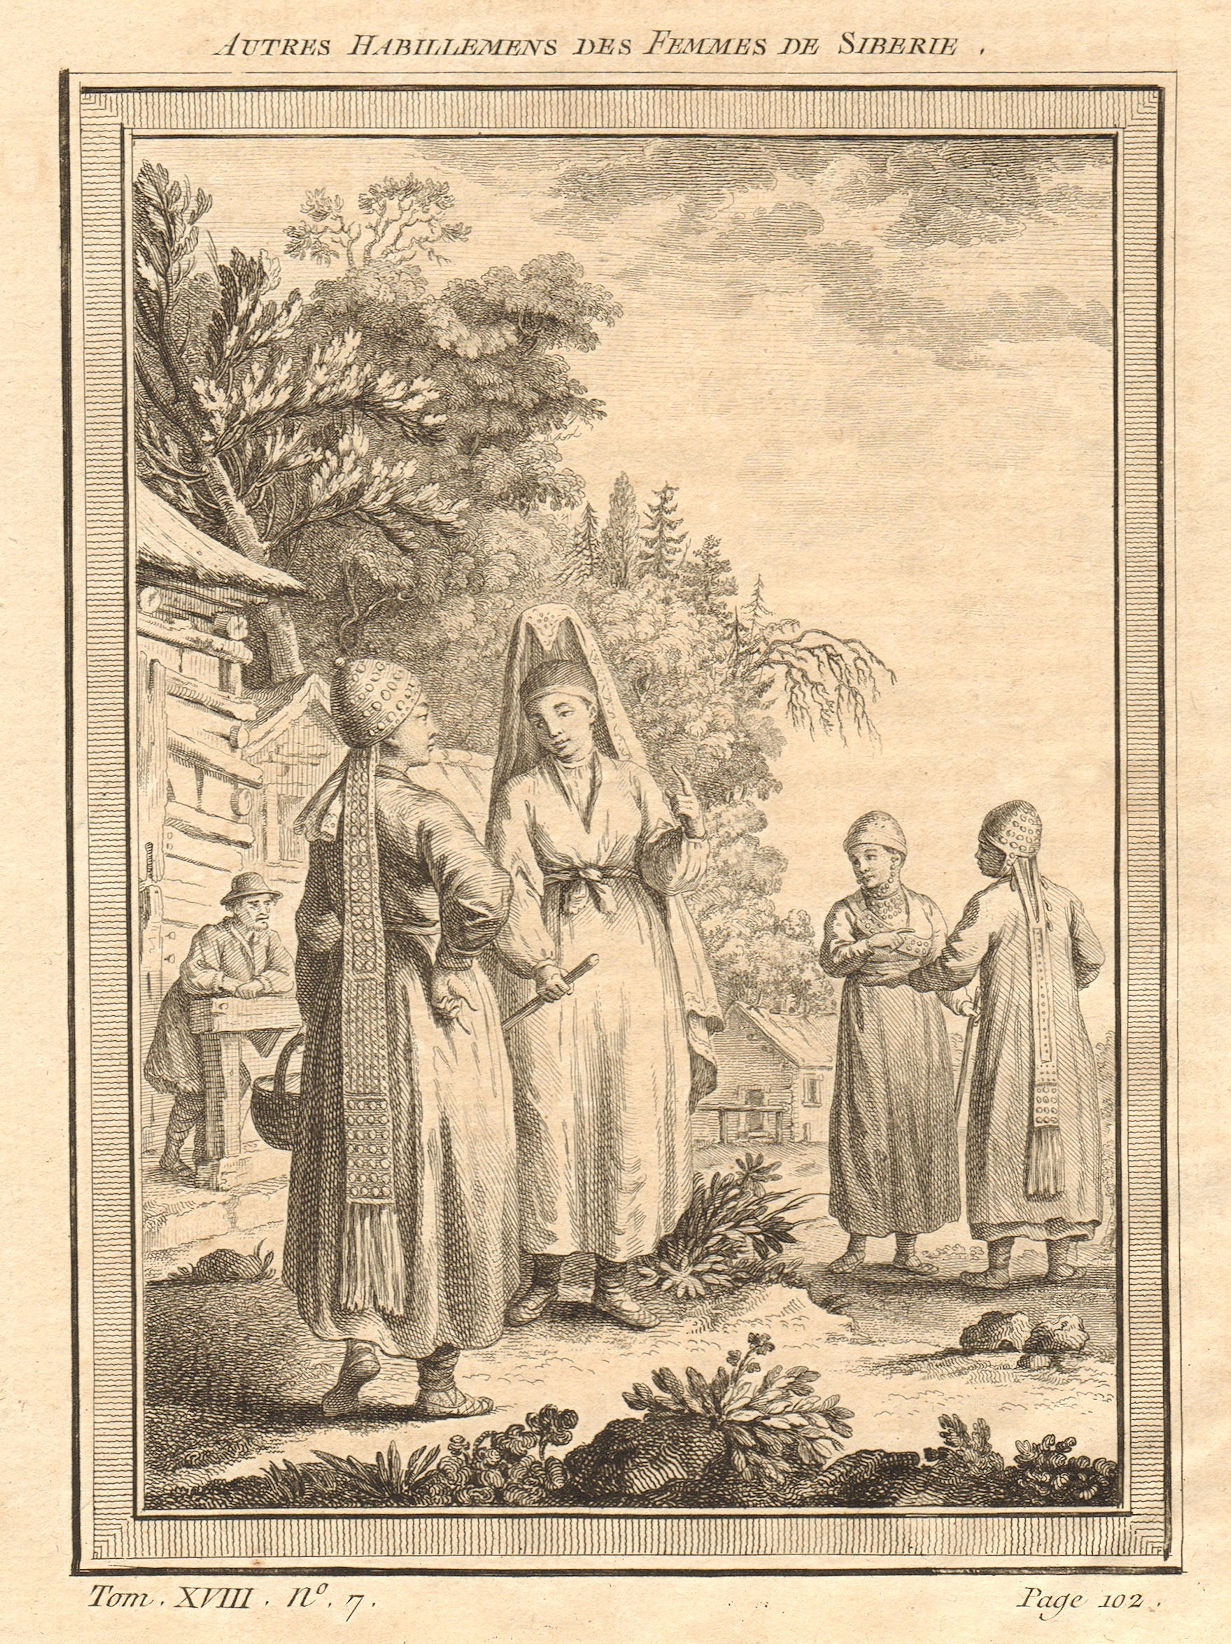 Associate Product 'Autres habillements des femmes de Siberie'. Siberian women's dress 1768 print